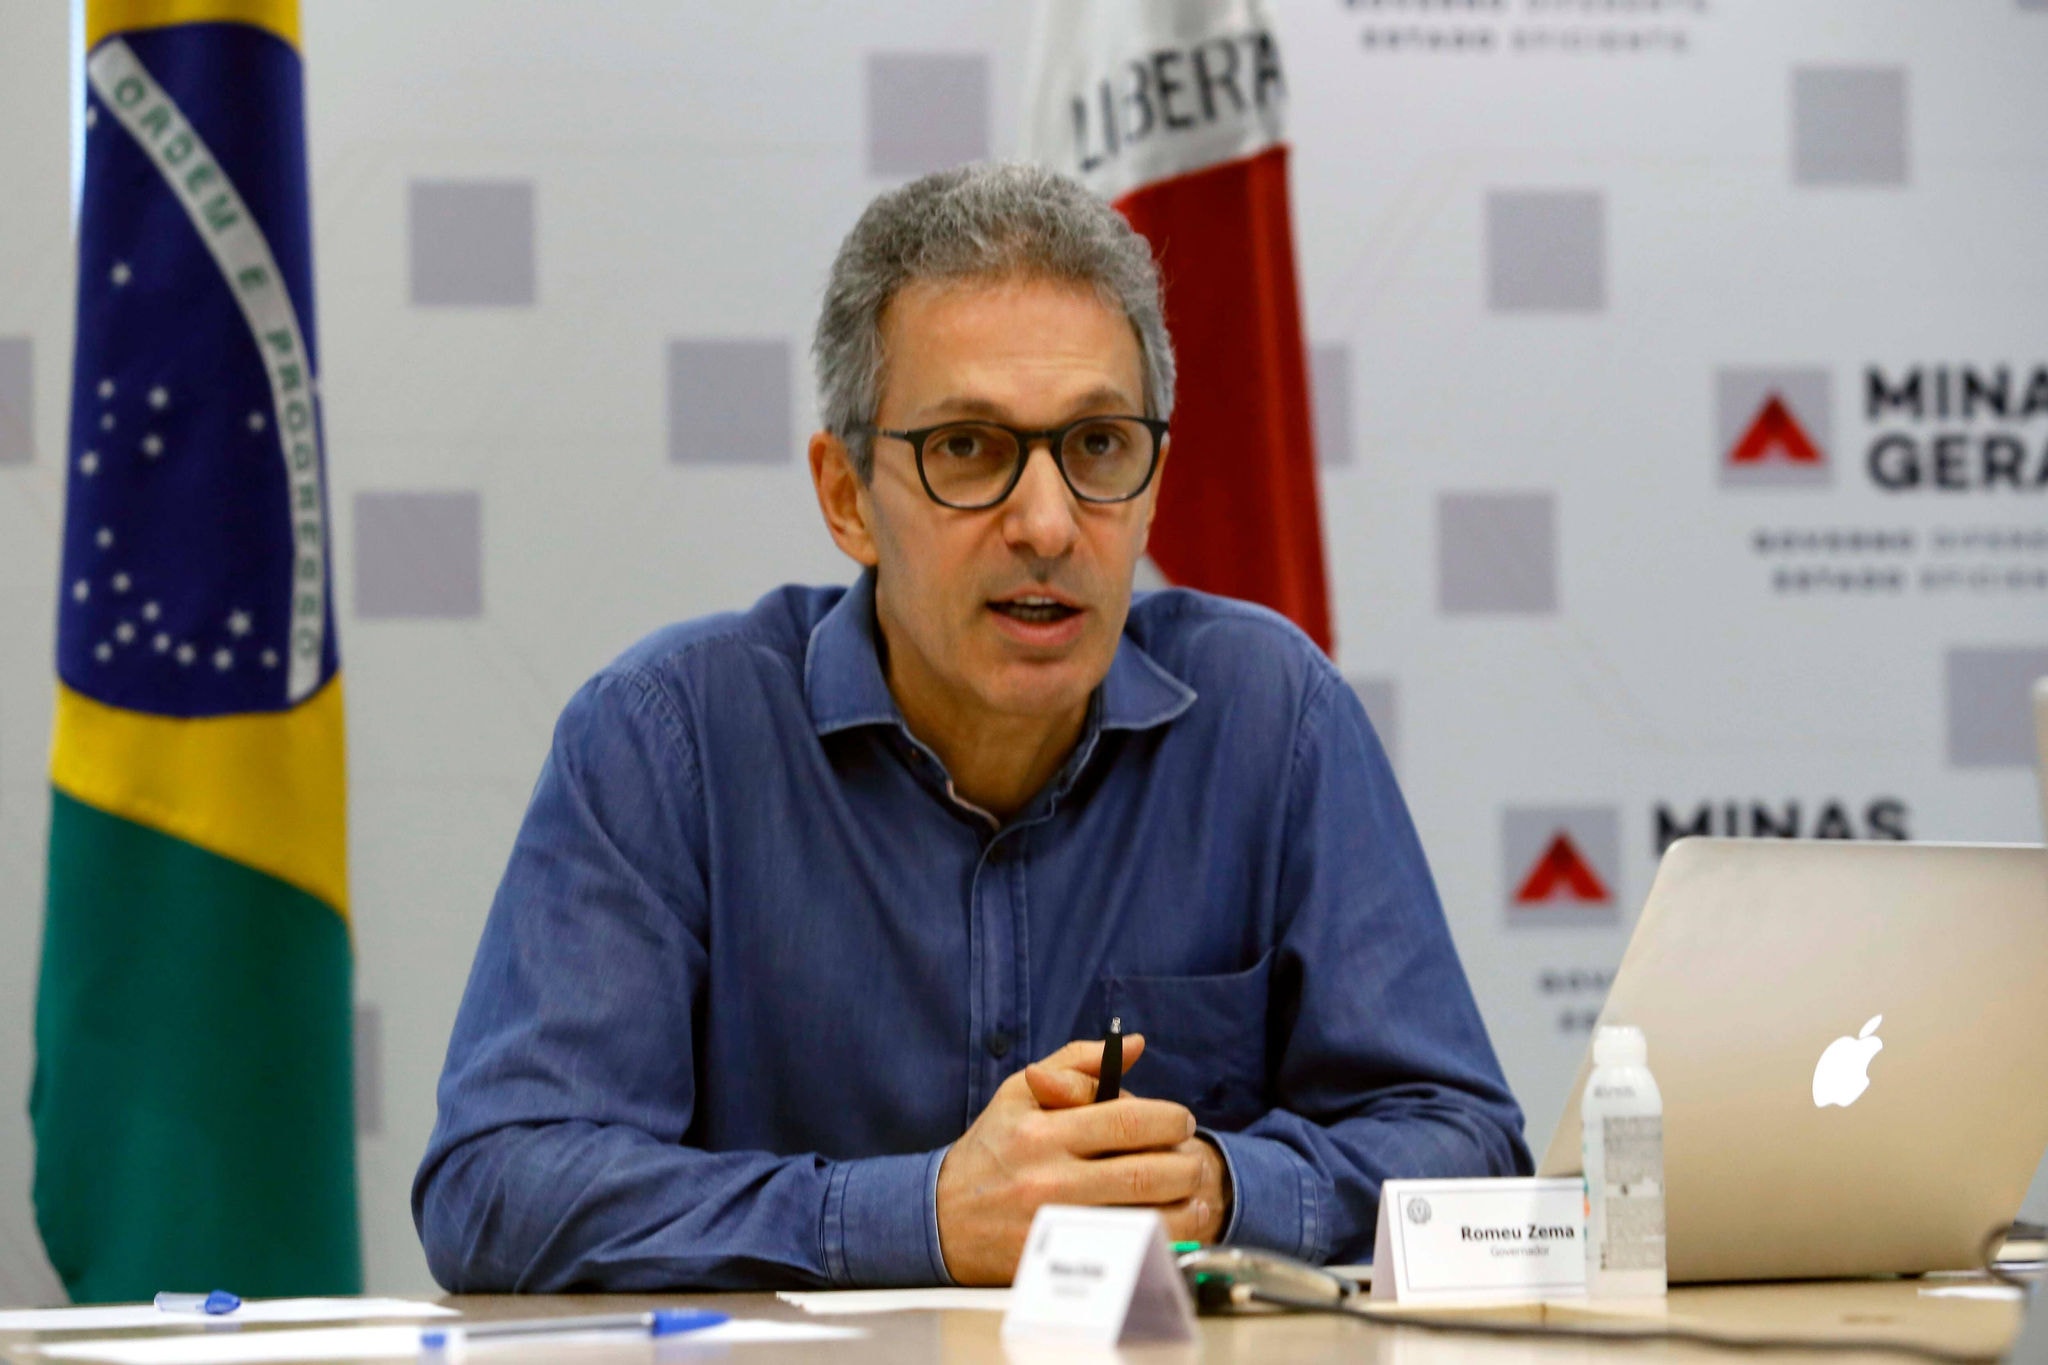 Romeu Zema (Novo) disse que Minas Gerais não irá aceitar 'impunidade'